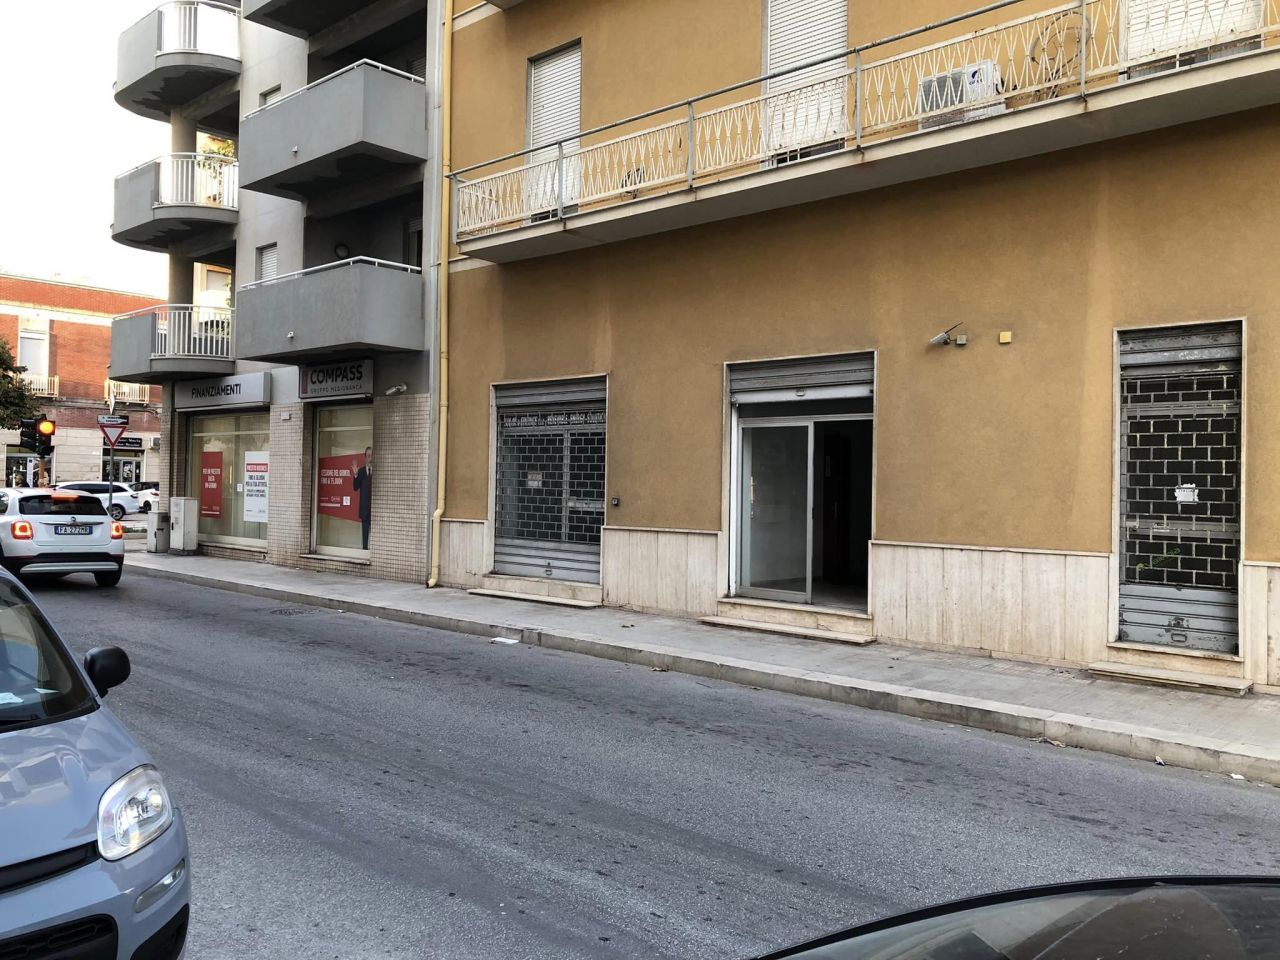 Attività / Licenza in vendita a Trapani, 2 locali, prezzo € 100.000 | PortaleAgenzieImmobiliari.it